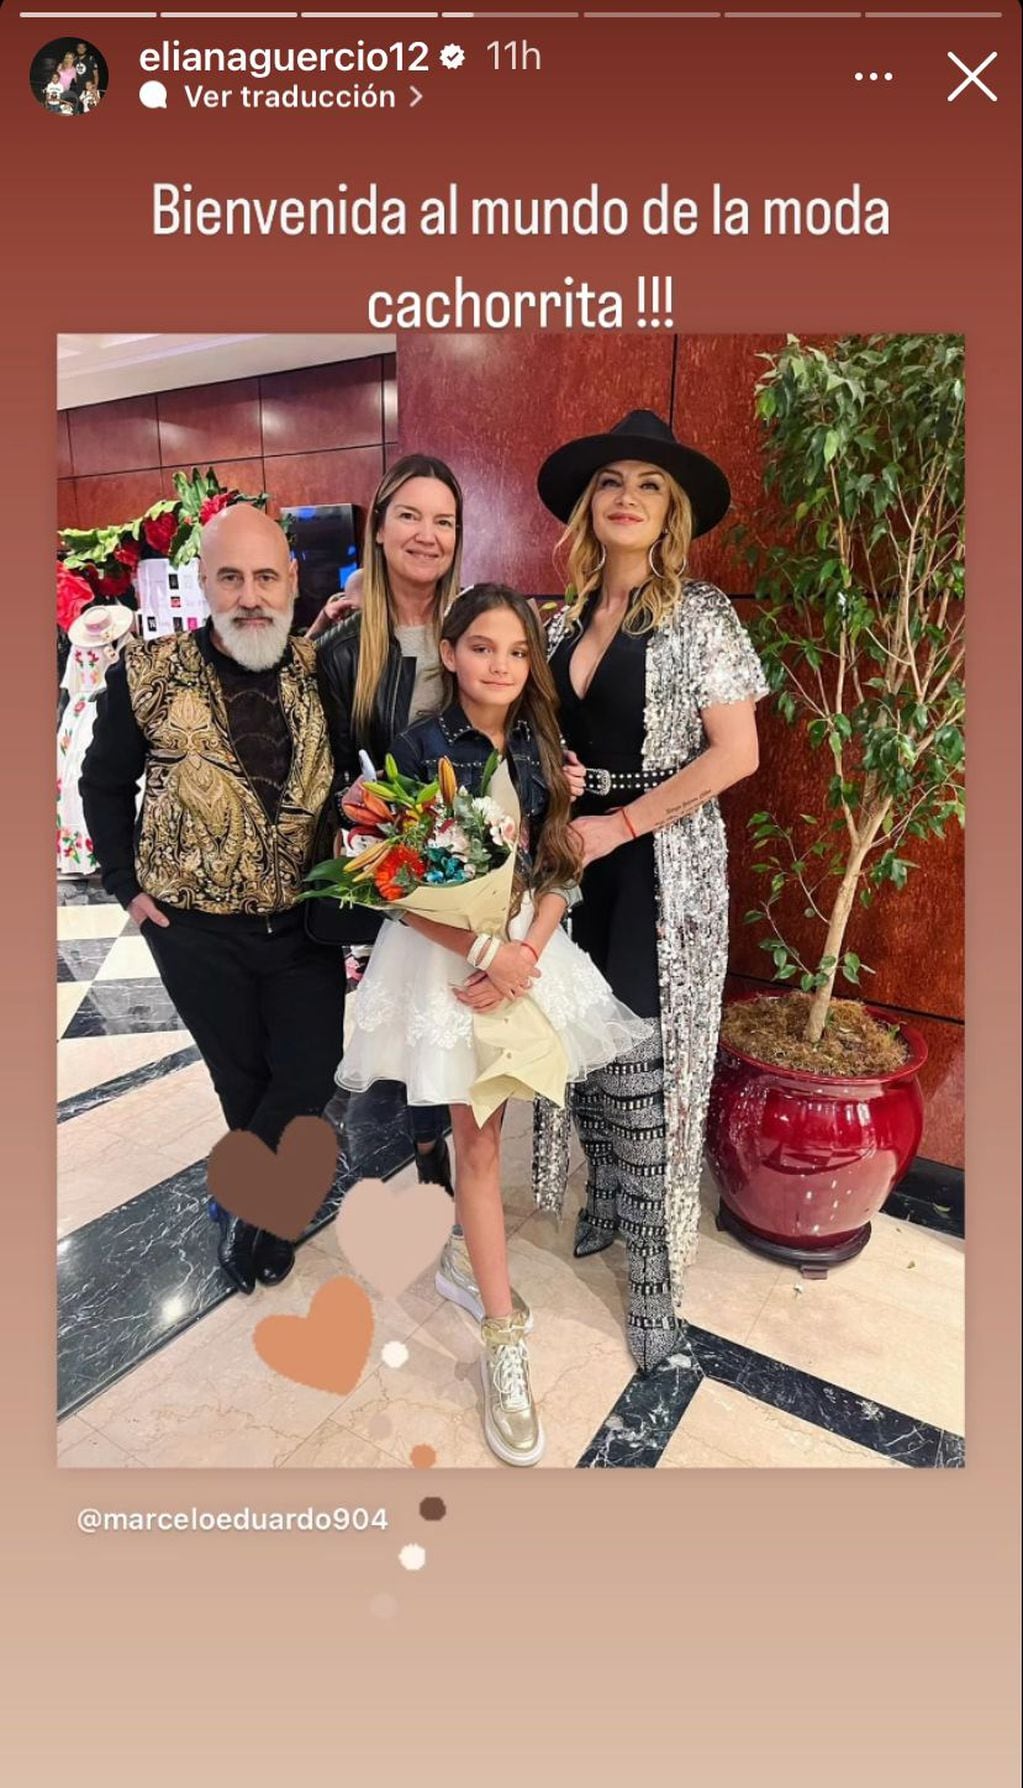 Chloé, la hija de Sergio Romero y Eliana Guercio, debutó como modelo. Gentileza Instagram.